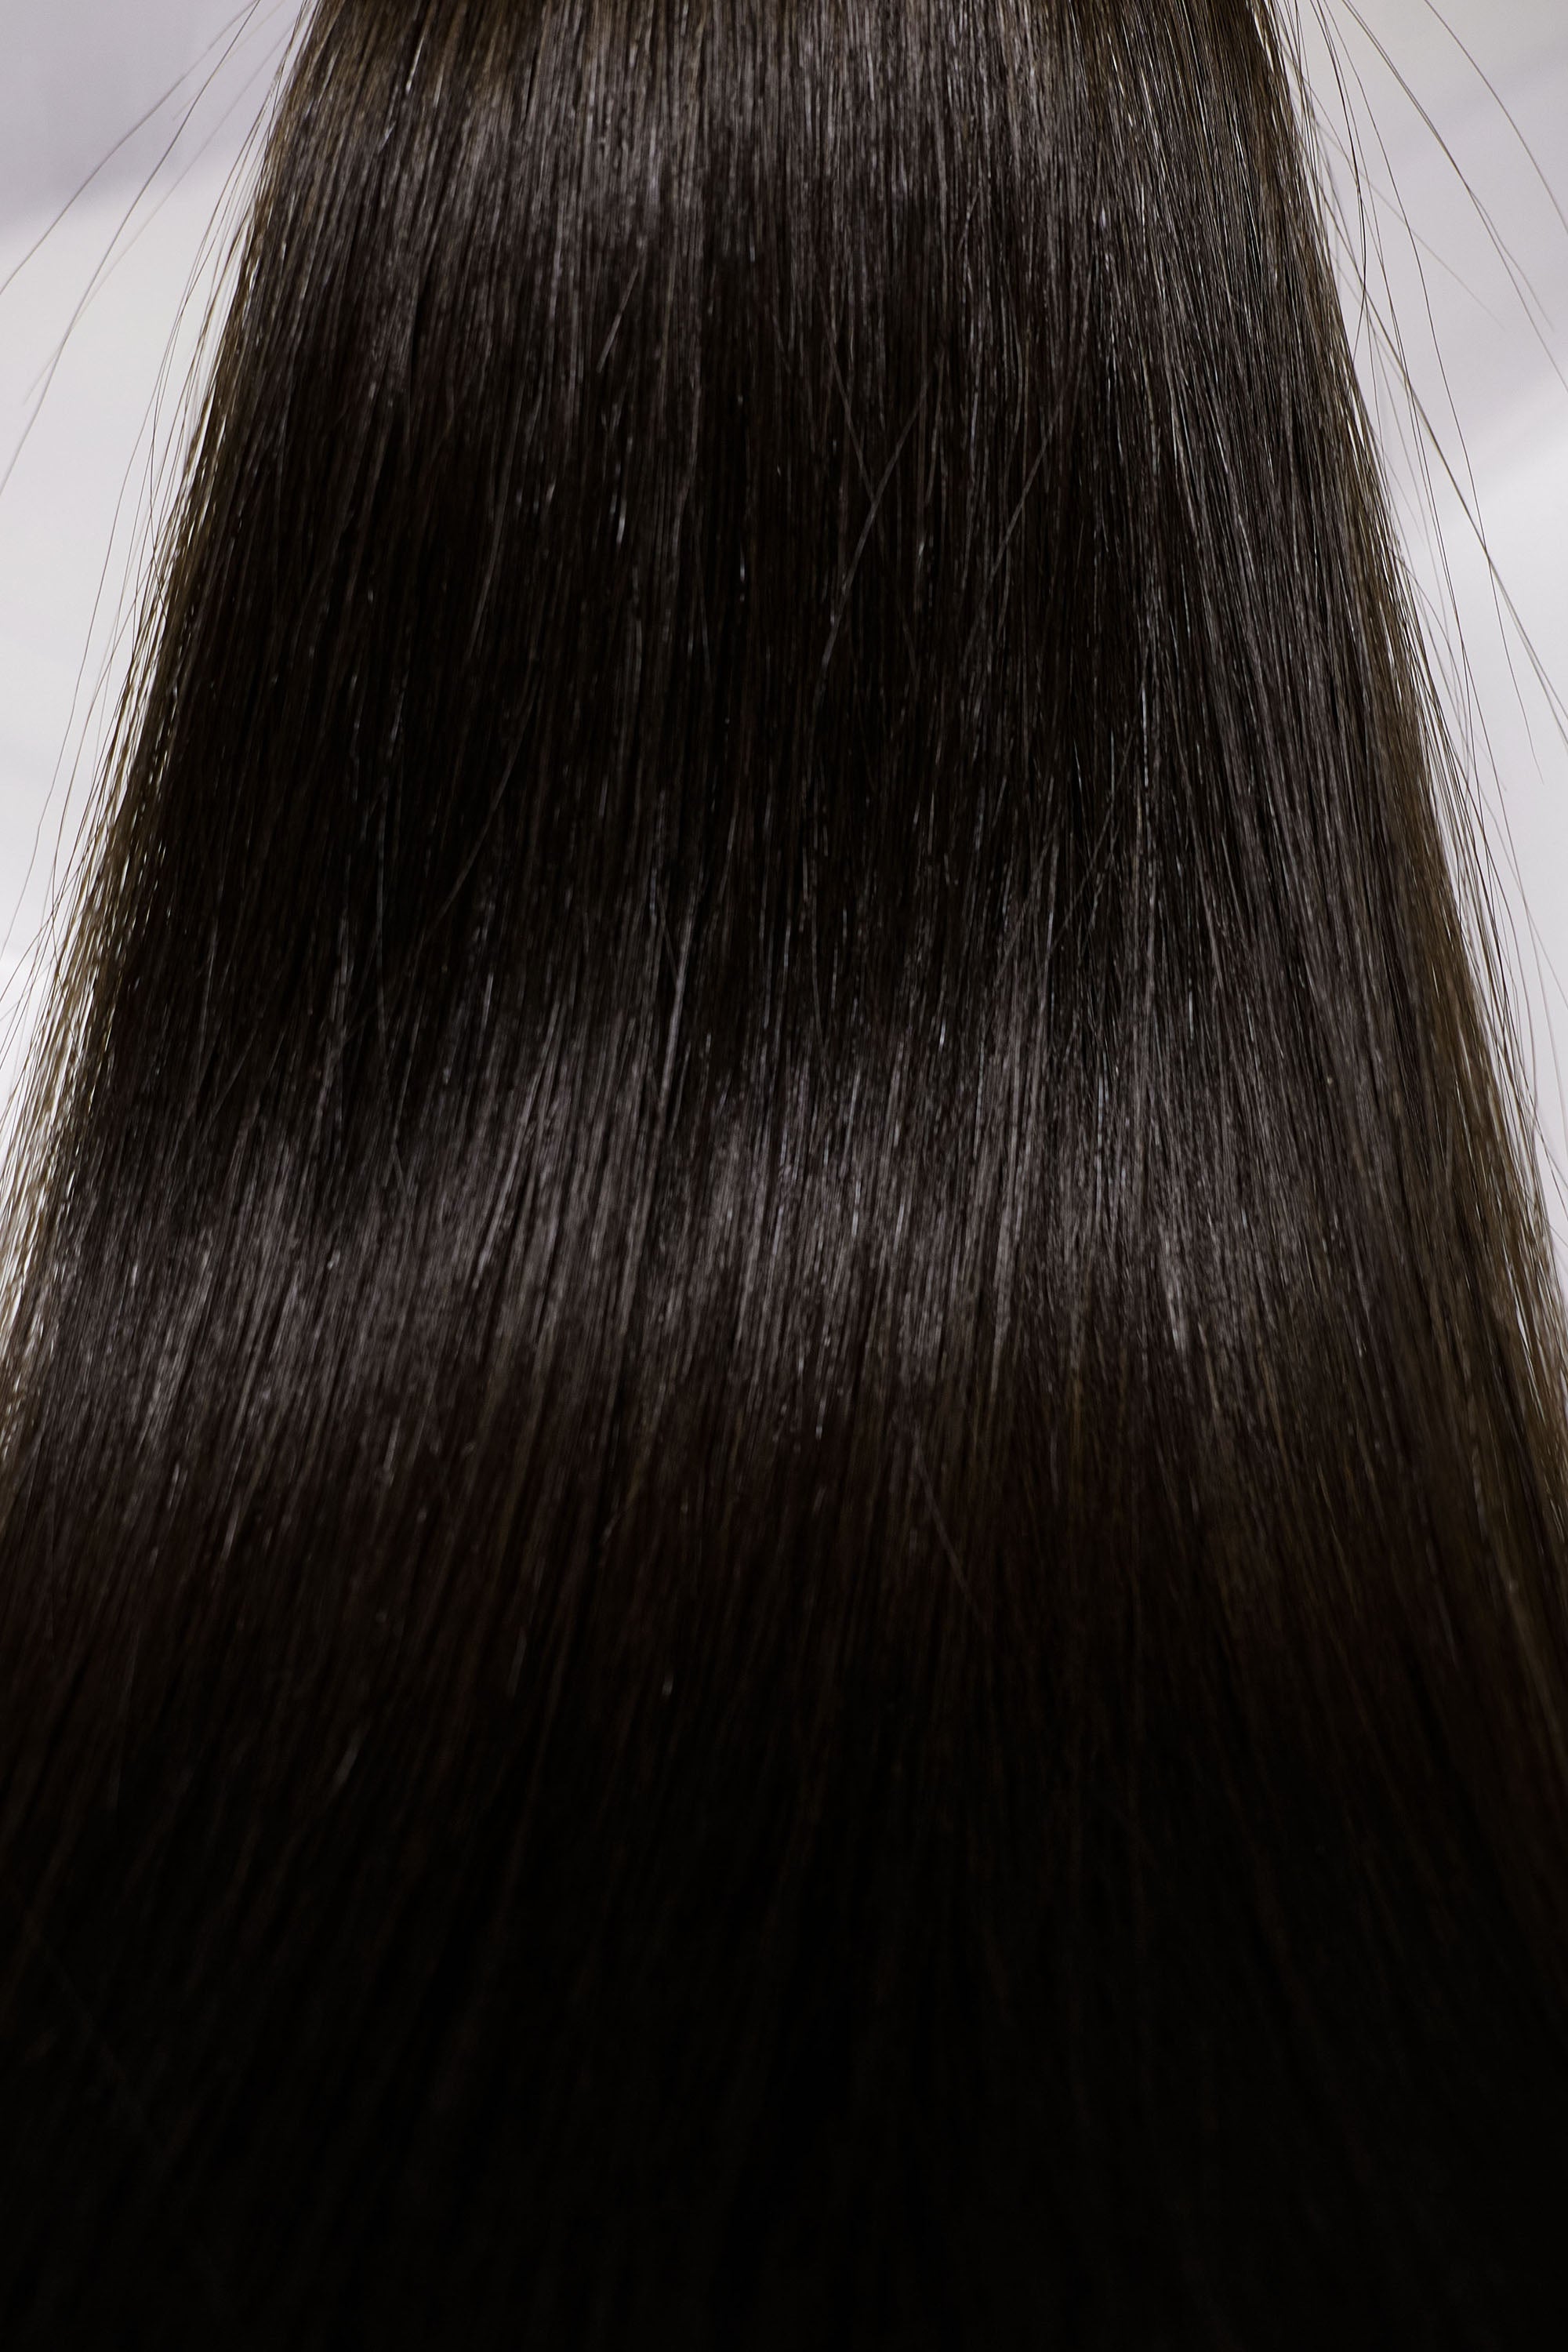 Behair professional Bulk hair "Premium" 28" (70cm) Natural Straight Natural Black #1B - 25g hair extensions